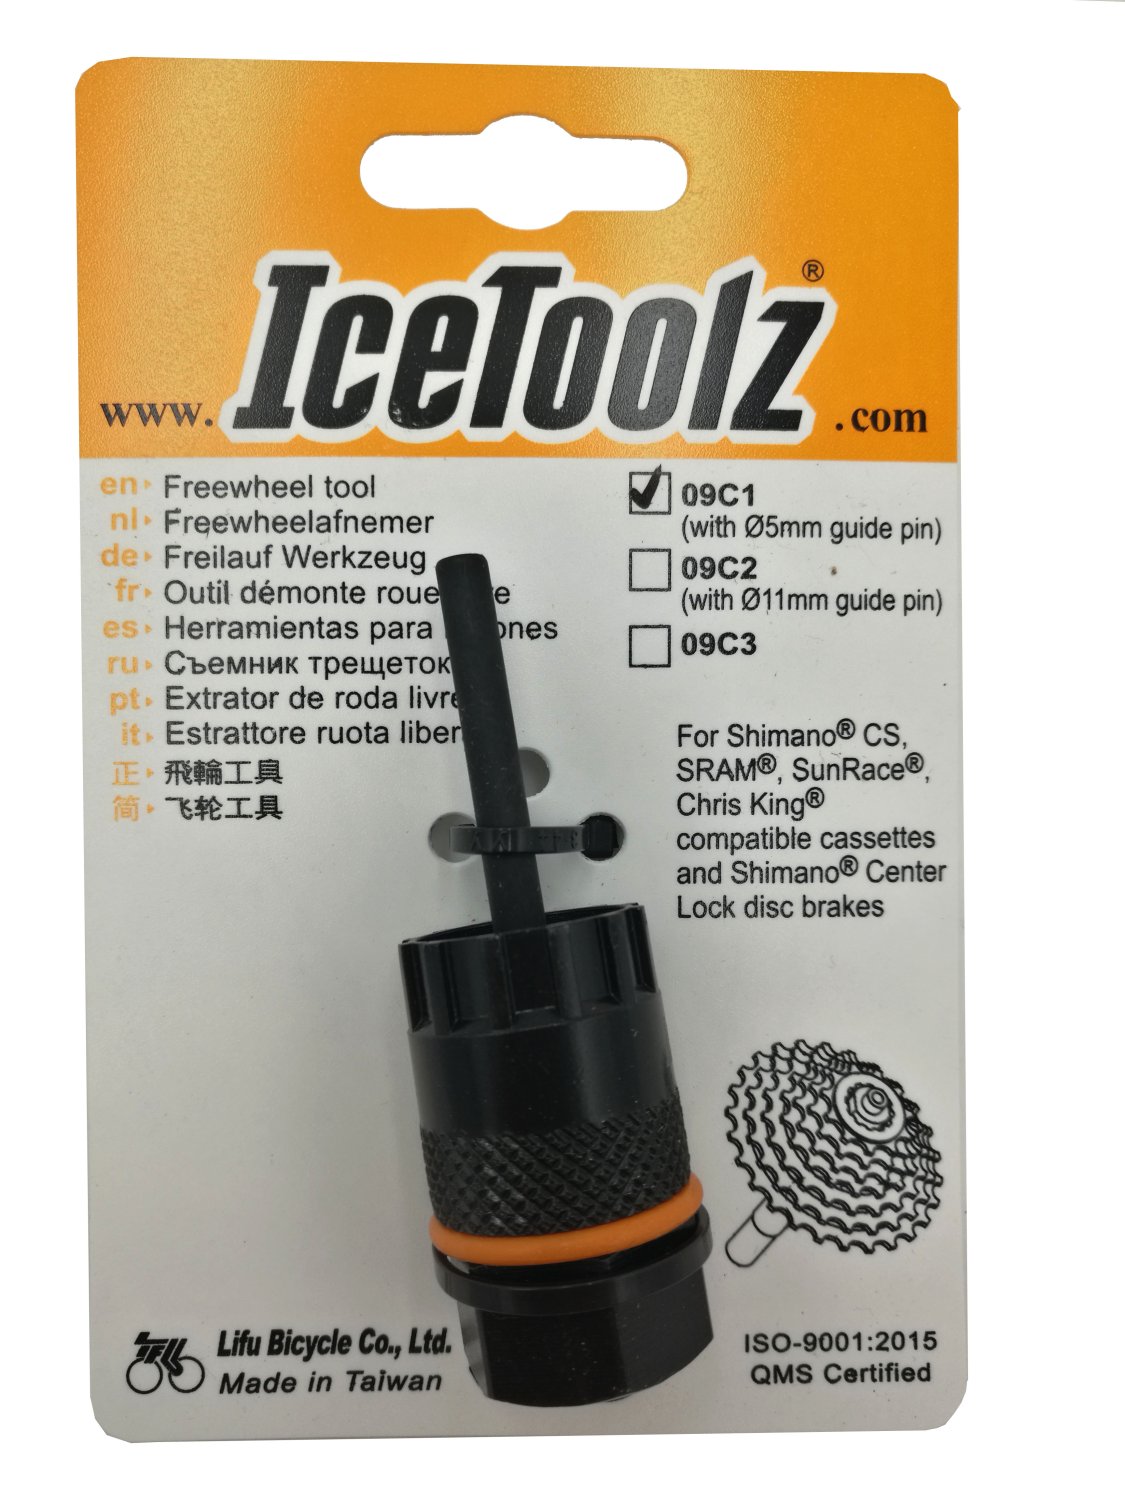 Съемник для кассет ICE TOOLZ Shimano CS/Center Lock, с направляющей , Сr-V сталь, 09C1